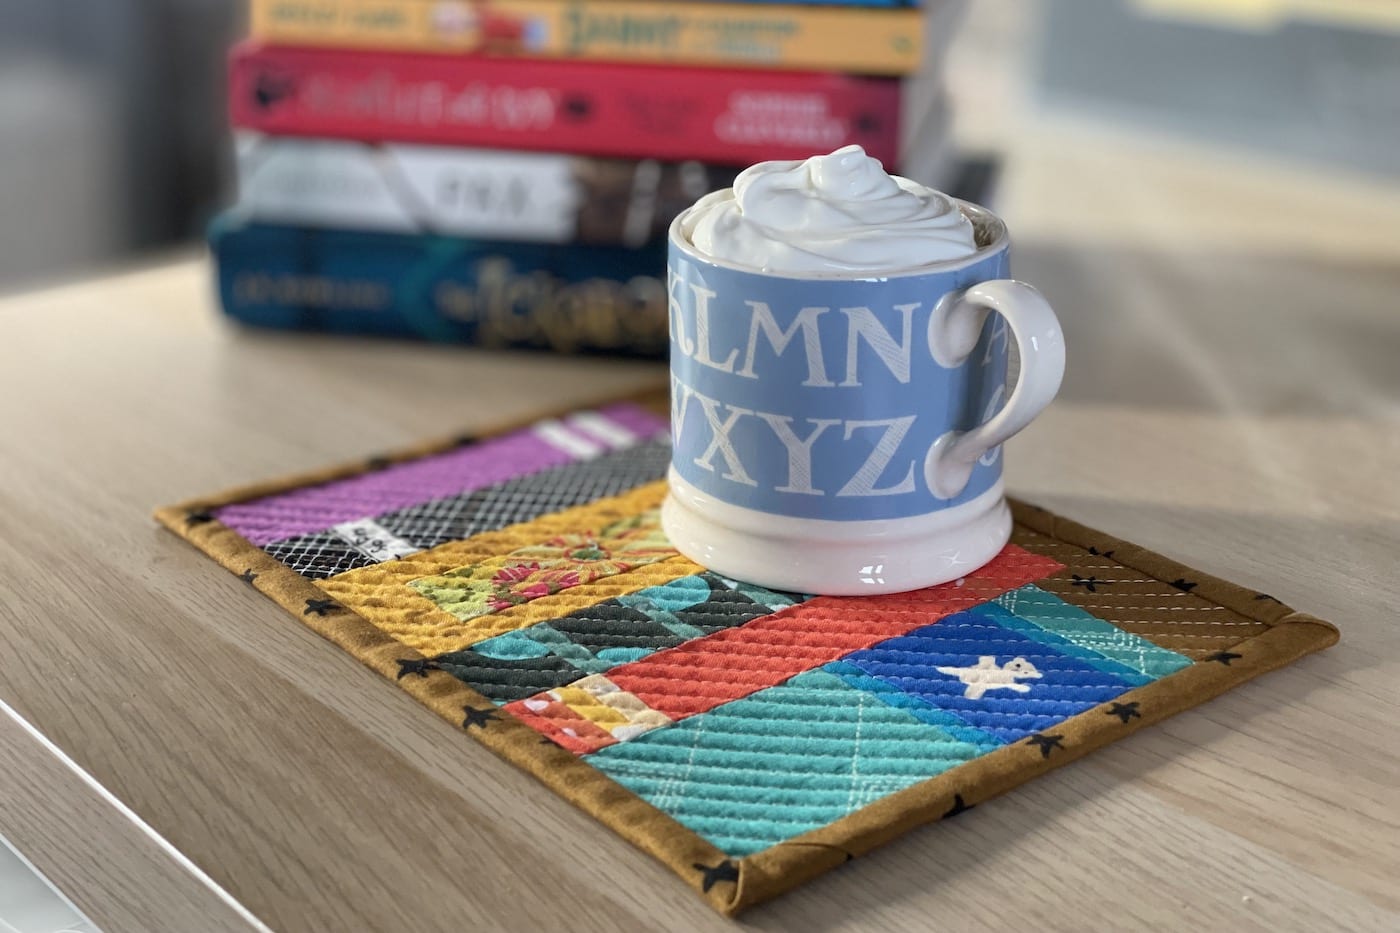 Mug rug and mug with ship cream and cocoa with books on wood table